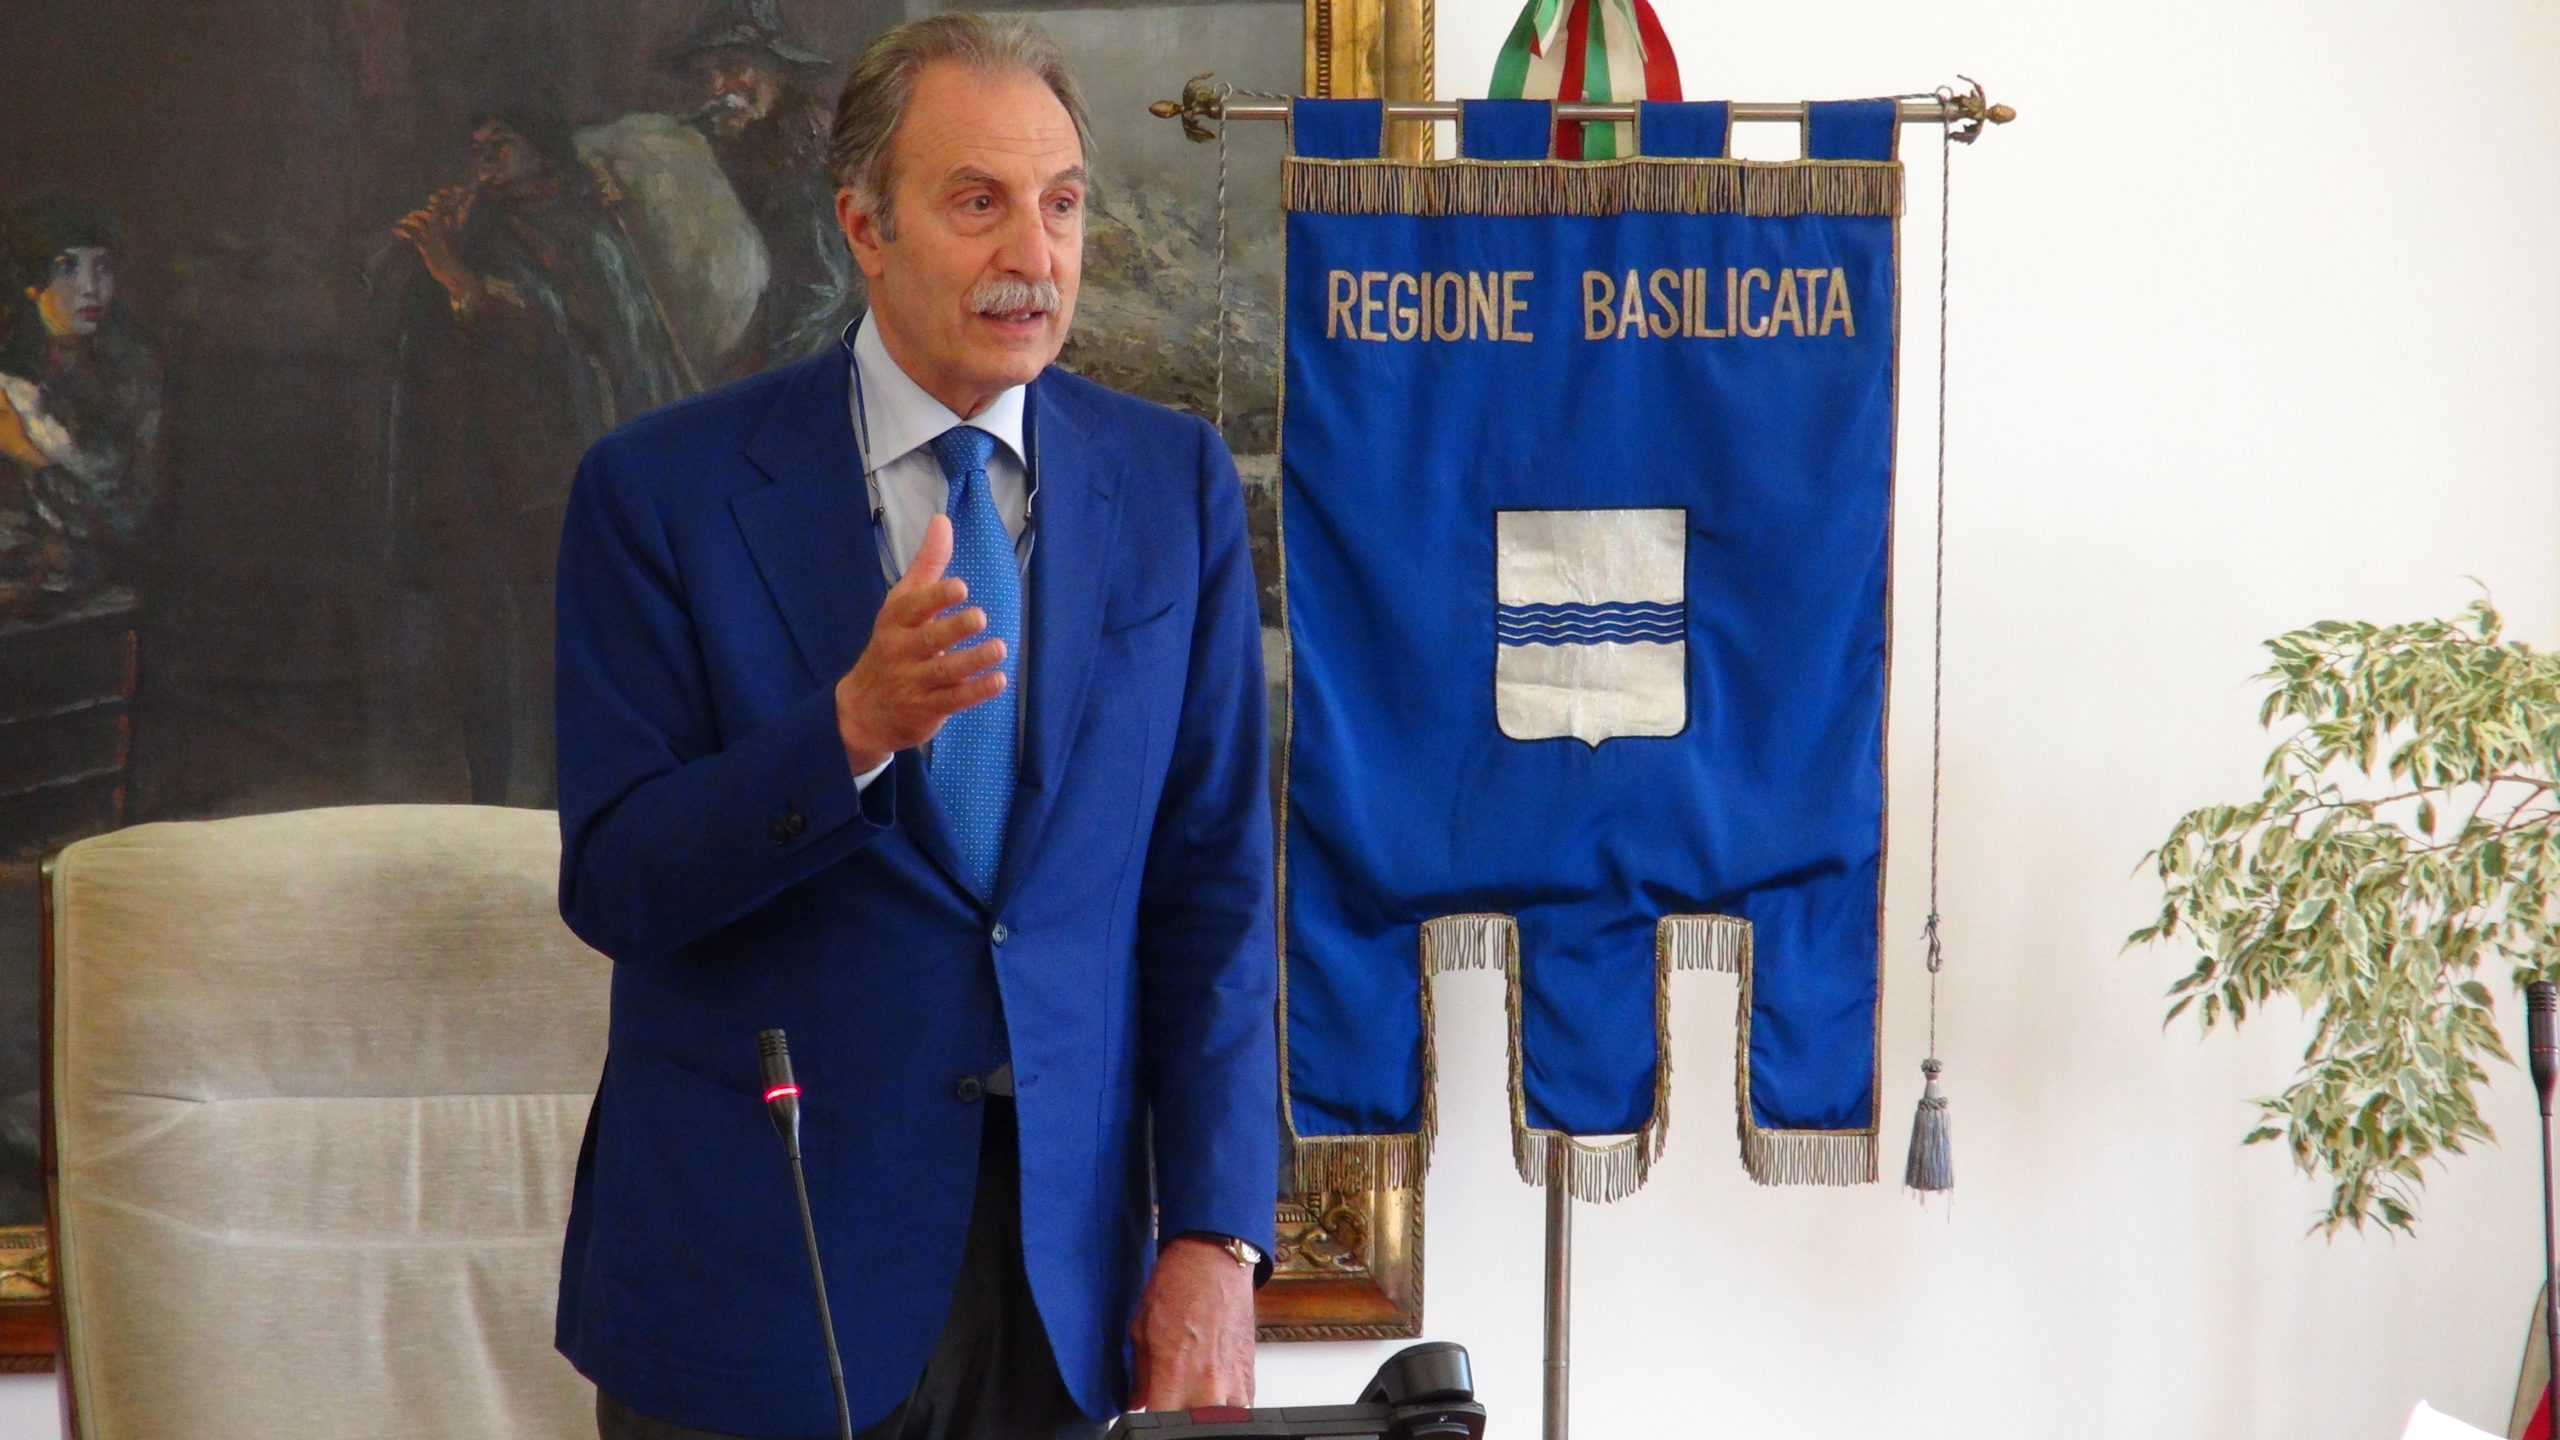 Covid-19 in Basilicata, il presidente Bardi ha emanato l’ordinanza n. 43.